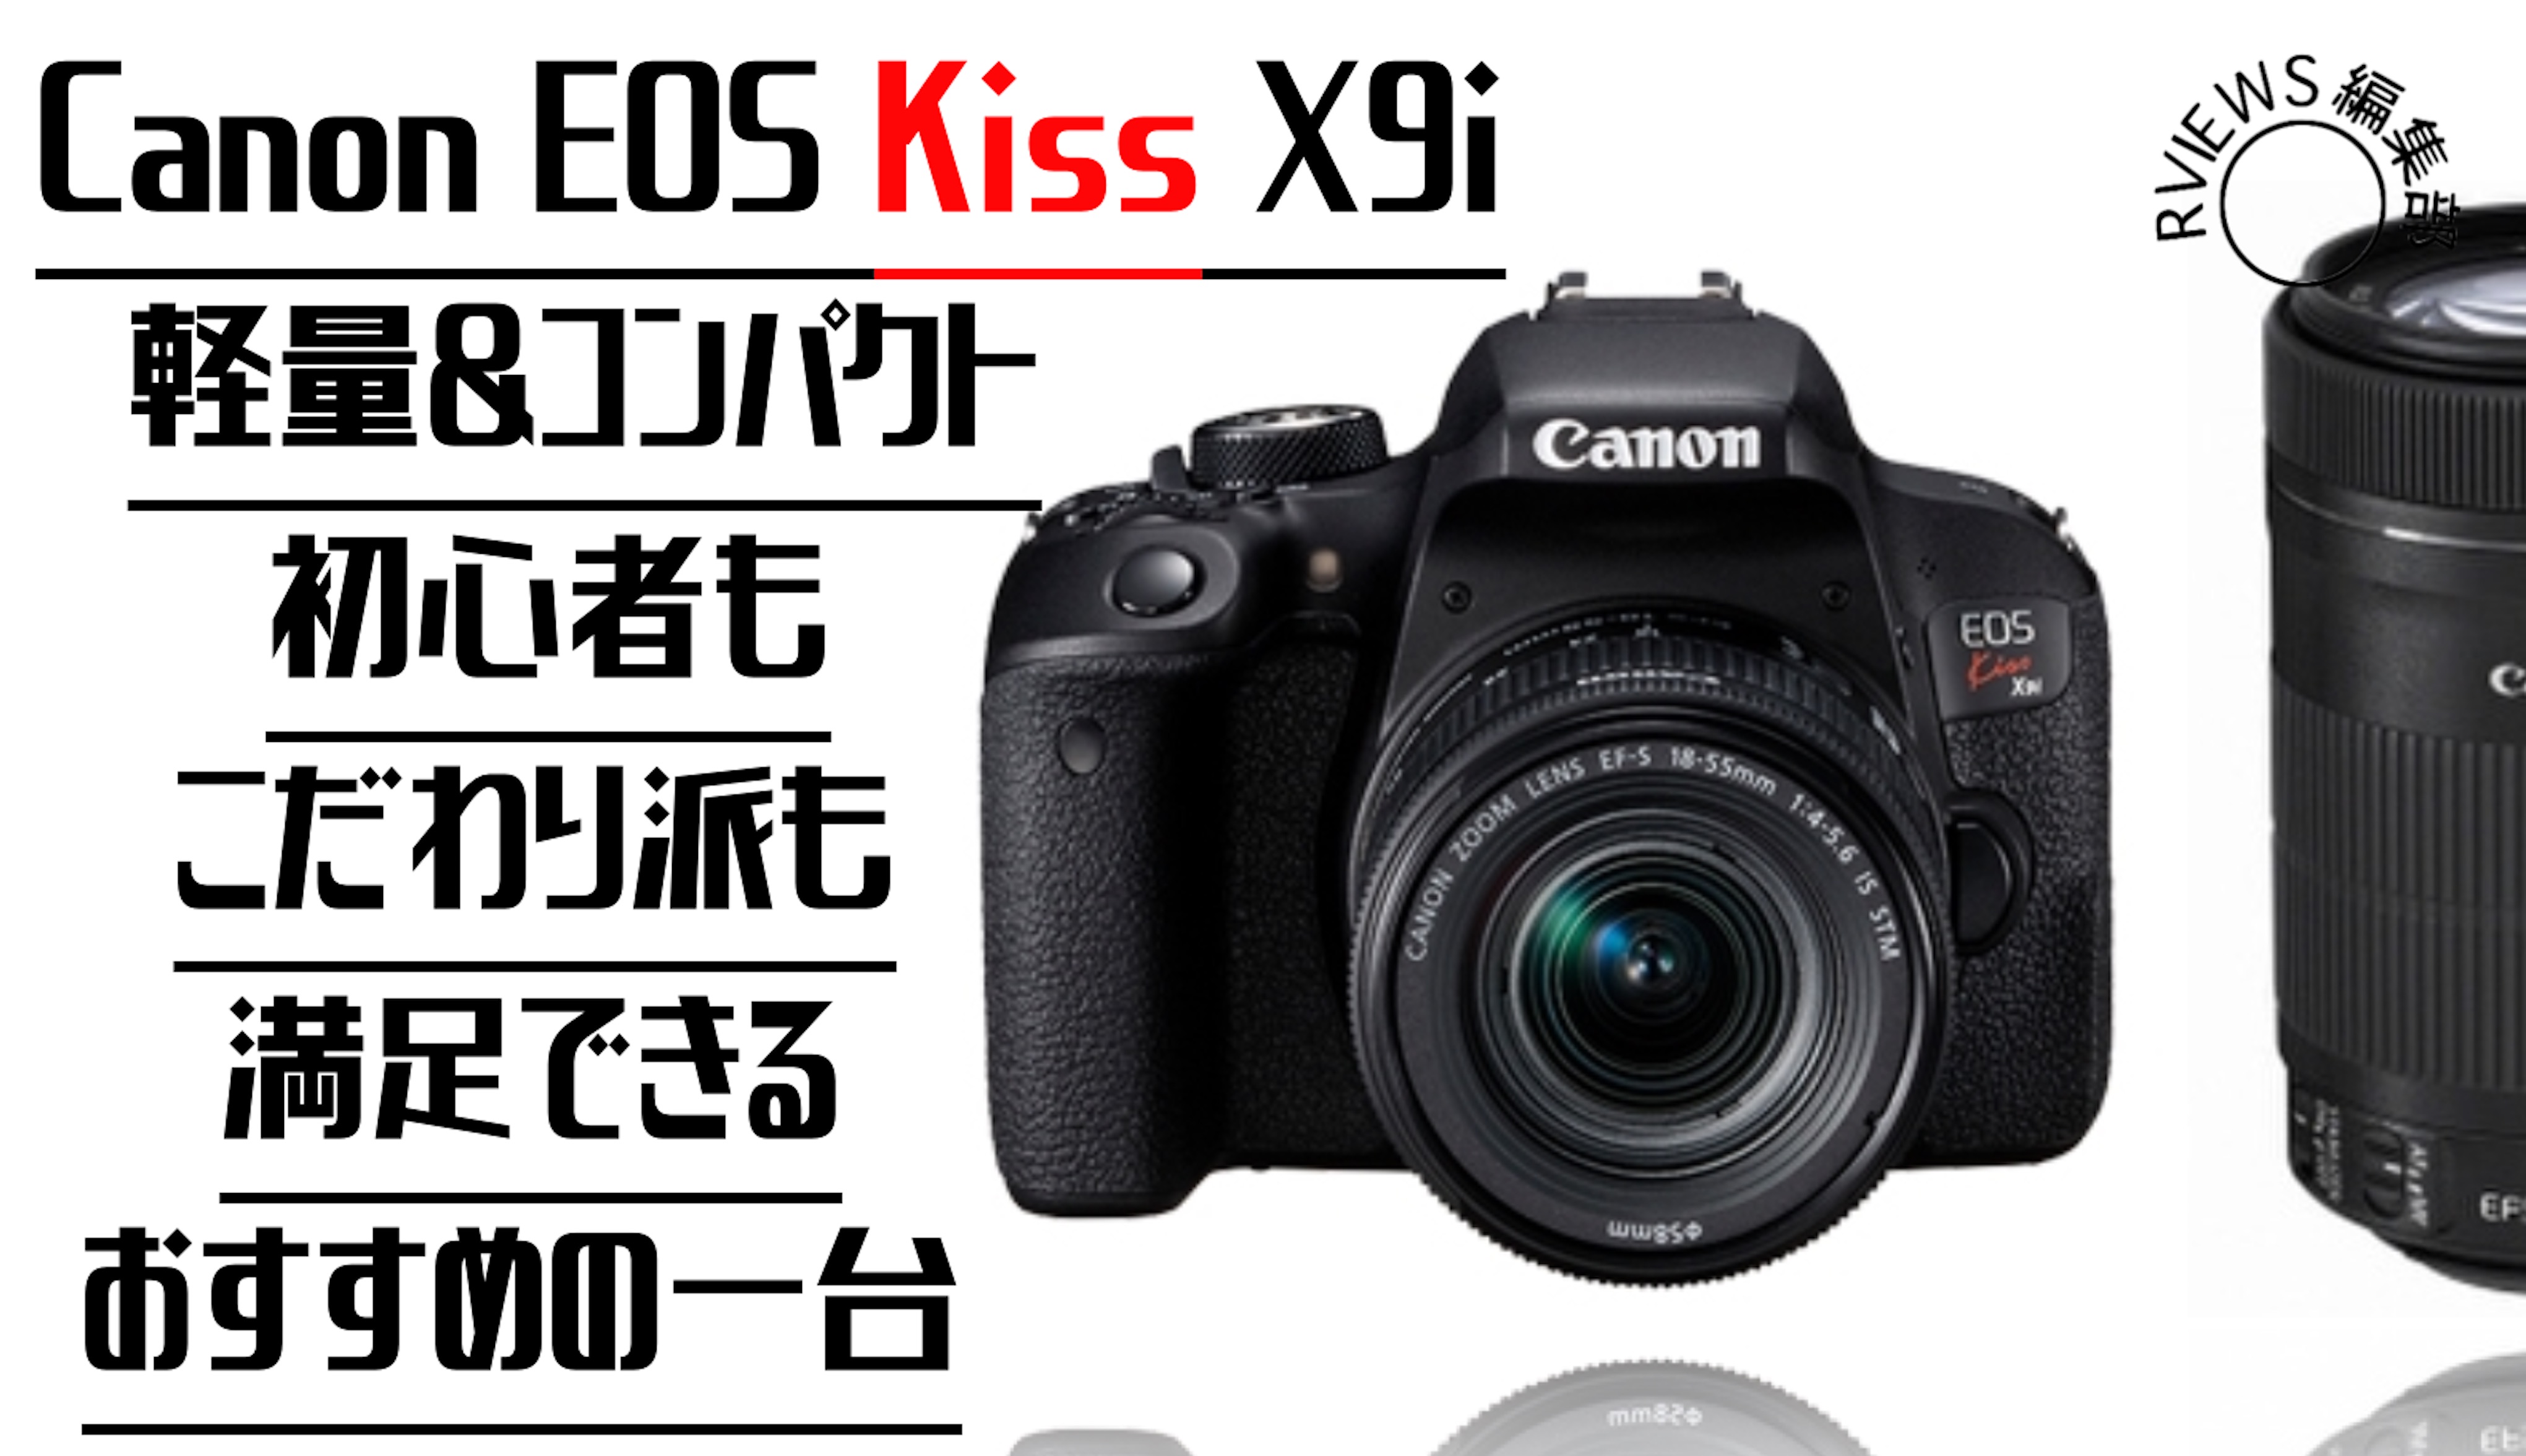 【保証付き】 Canon EOS Kiss X9i キャノン デジタル 一眼レフ